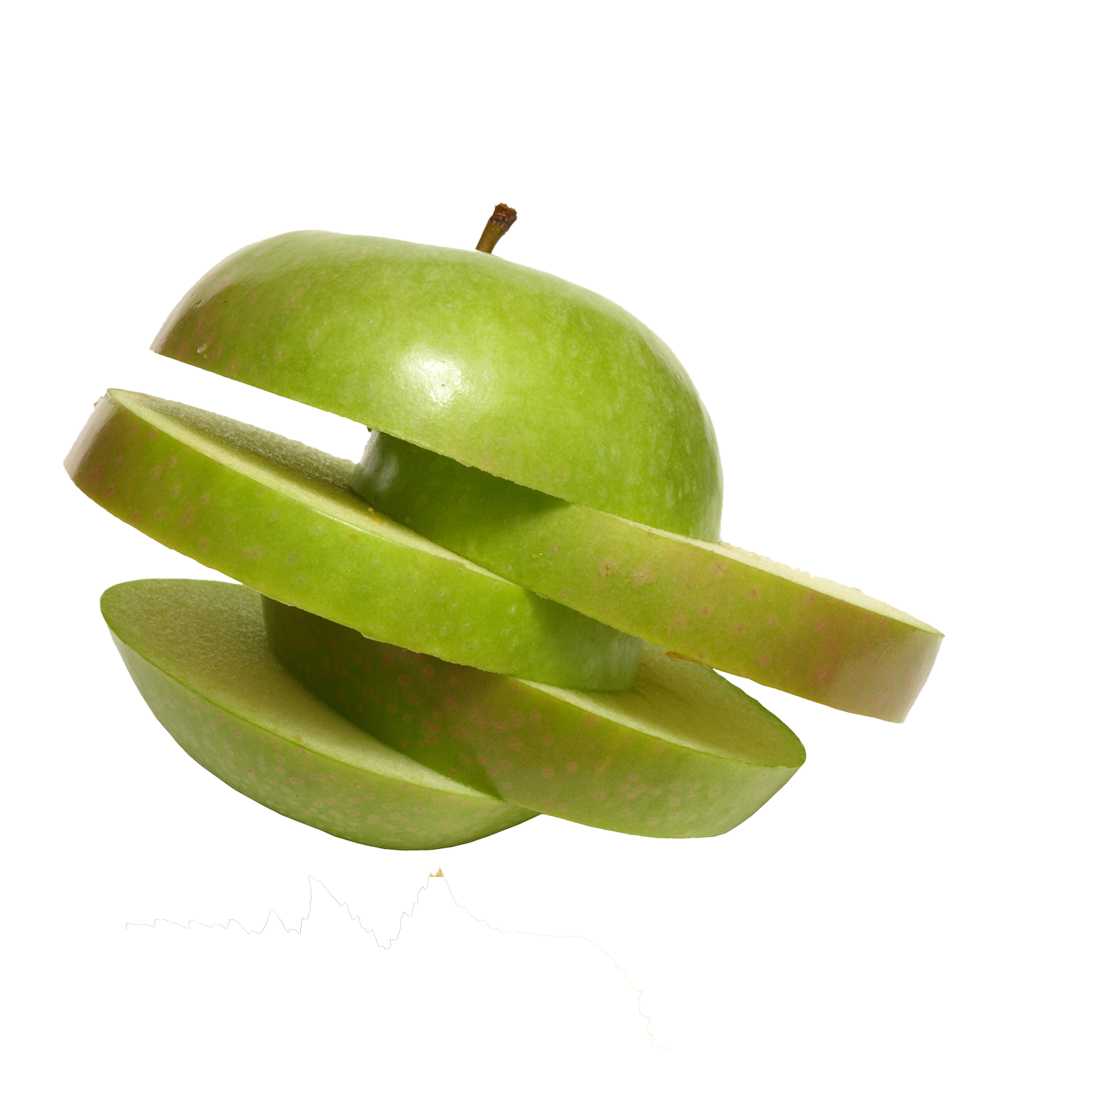 عکس دوربری شده سیب سبز لایه لایه برای photoshop